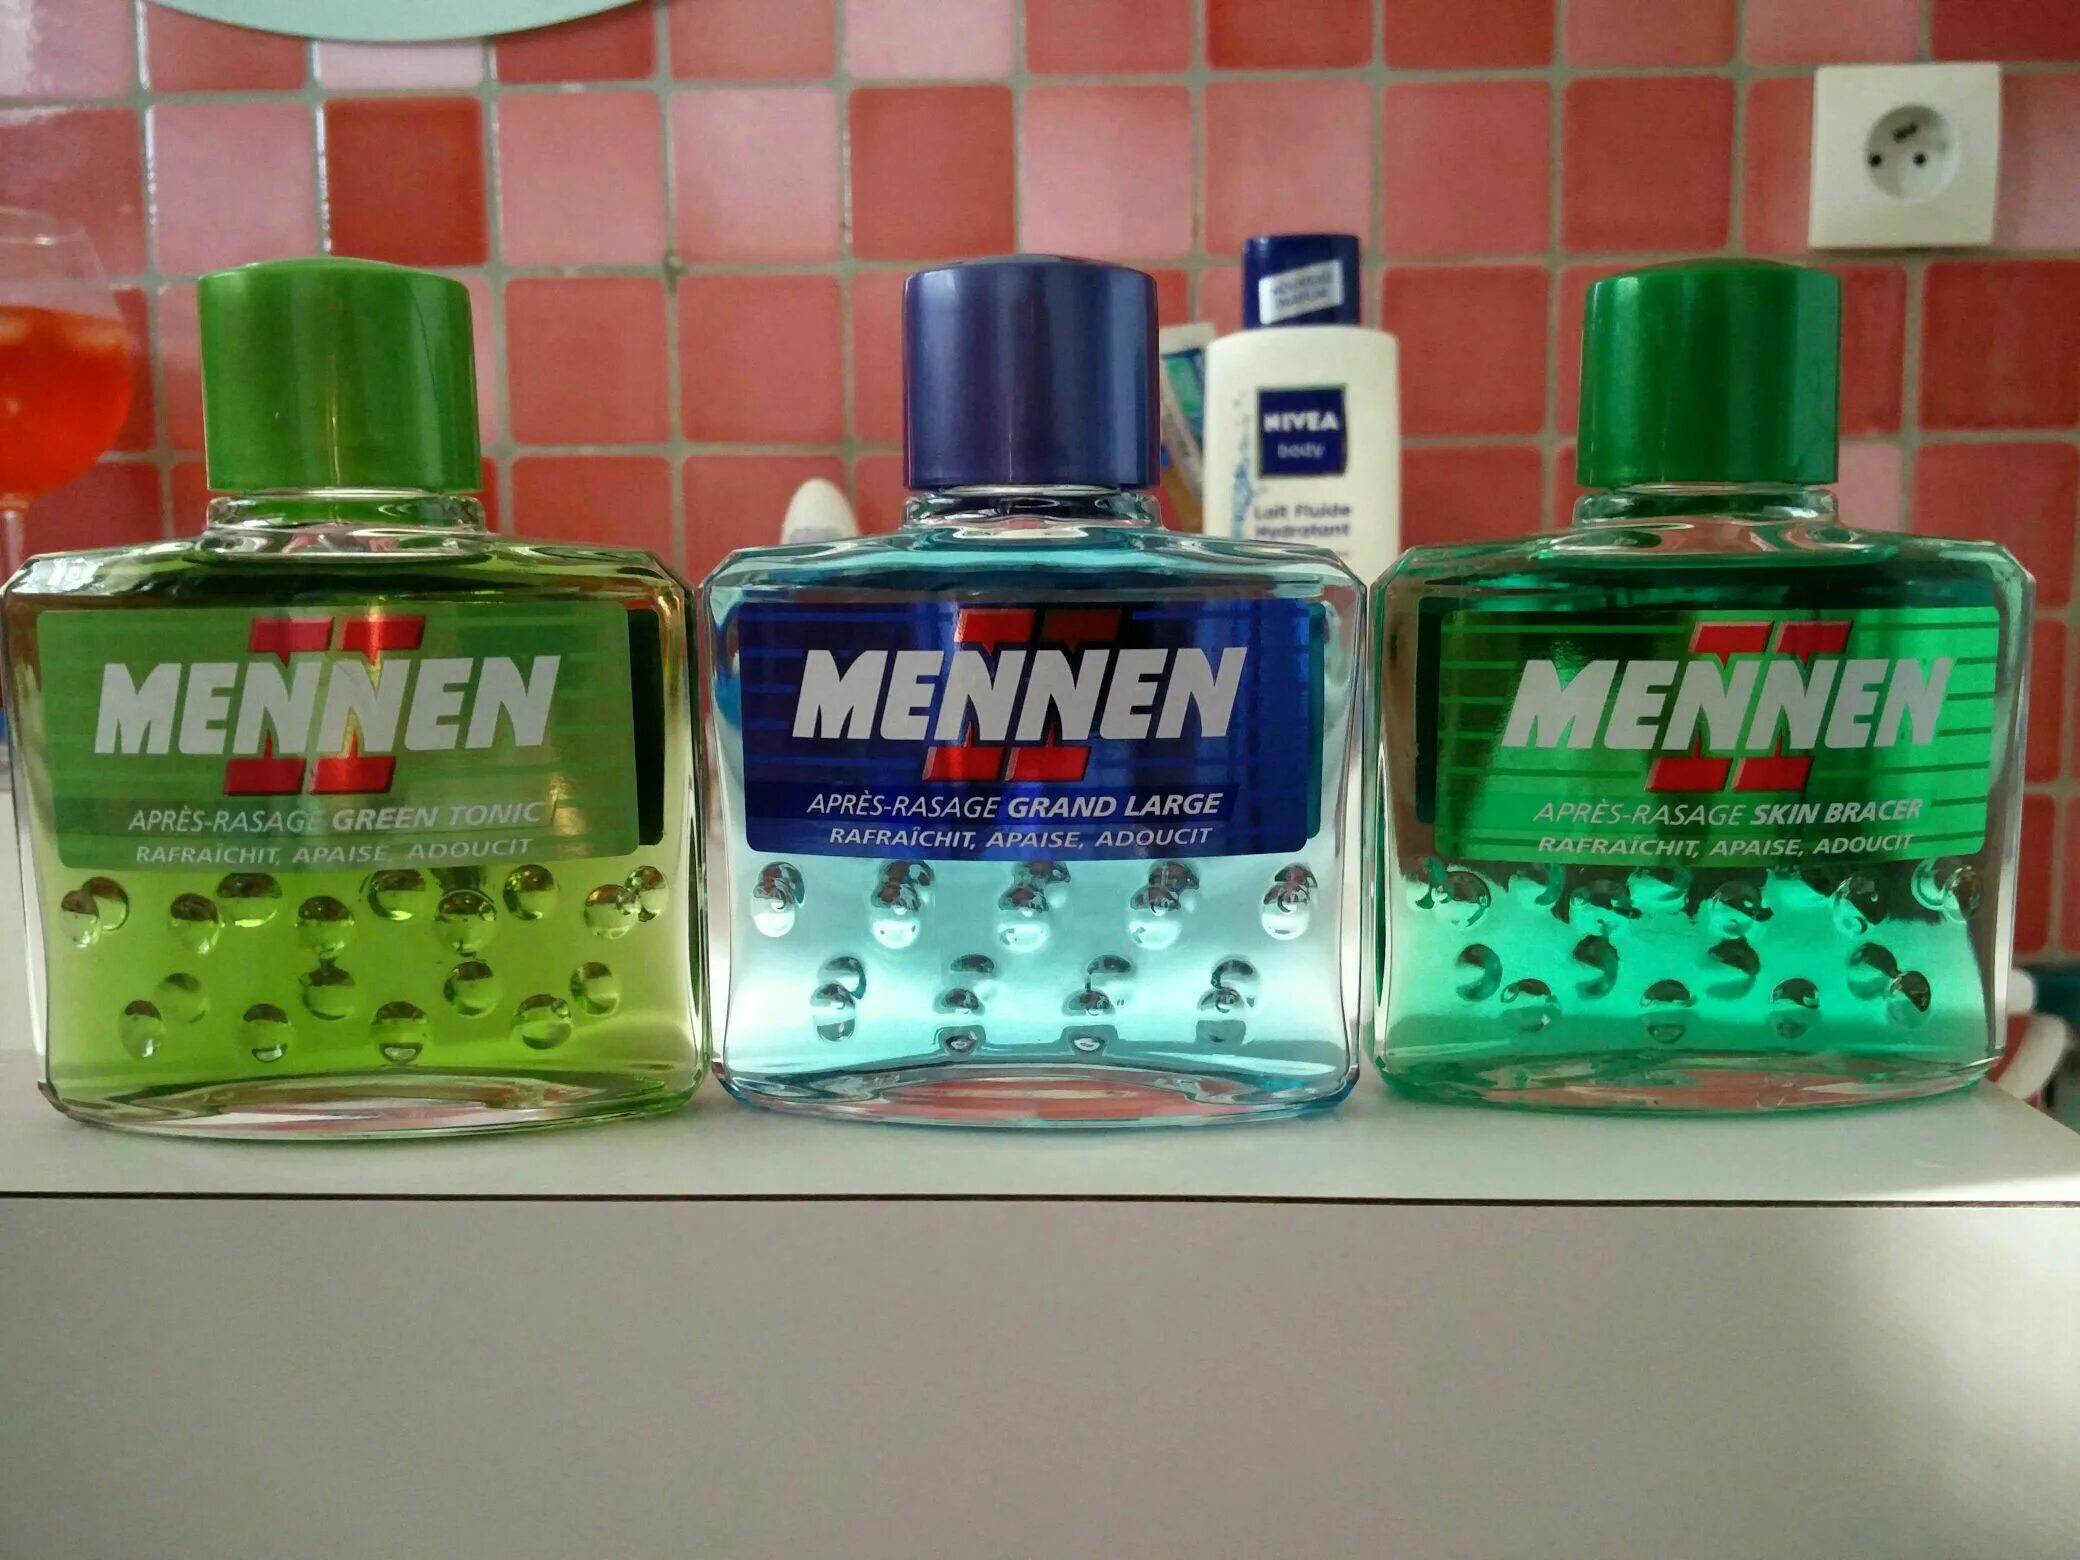 Вода после бритья. Лосьон после бритья Mennen. Лосьон после бритья Mennen Original. Лосьон после бритья меннен зеленый. Лосьон Black Musk Mennen.